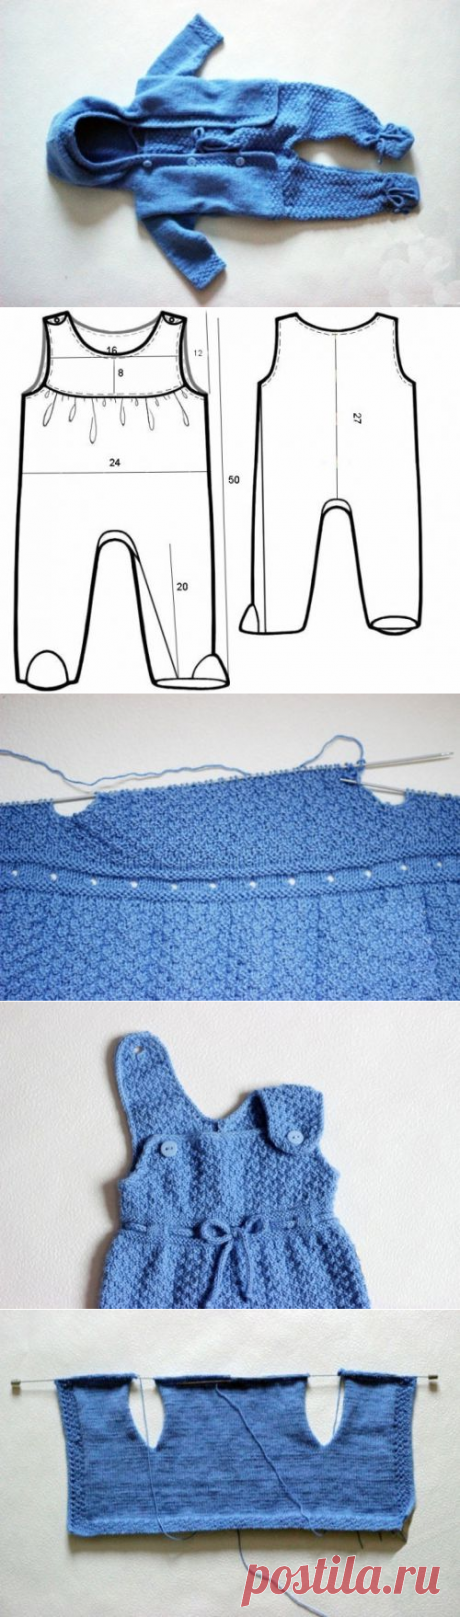 Вязаные костюмы для новорожденных: вязание спицами и крючком + схемы